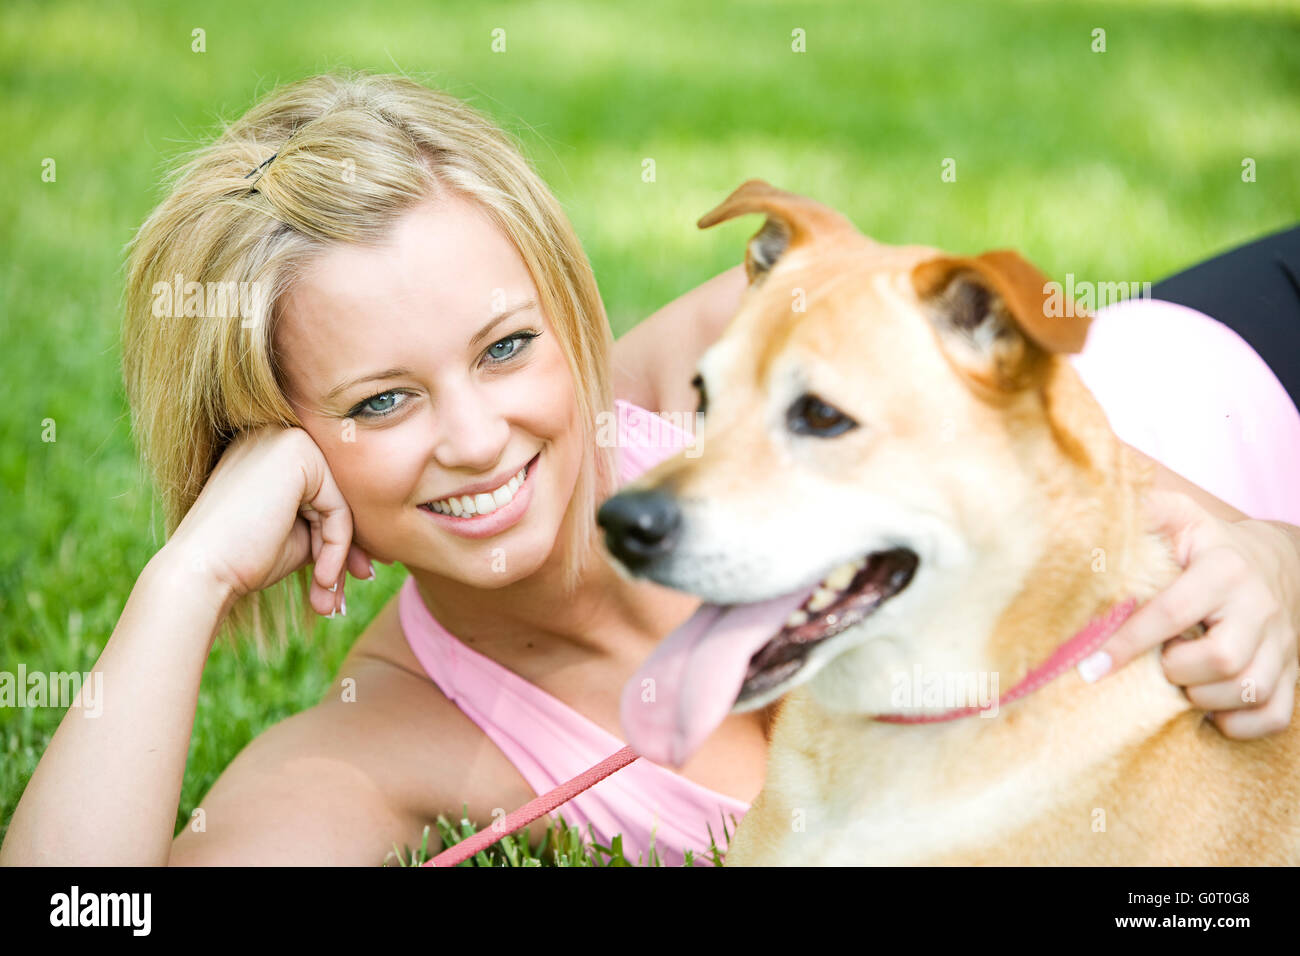 Serie mit Mädchen gehen und spielen in einem Park im Frühjahr, mit einem Hund. Stockfoto